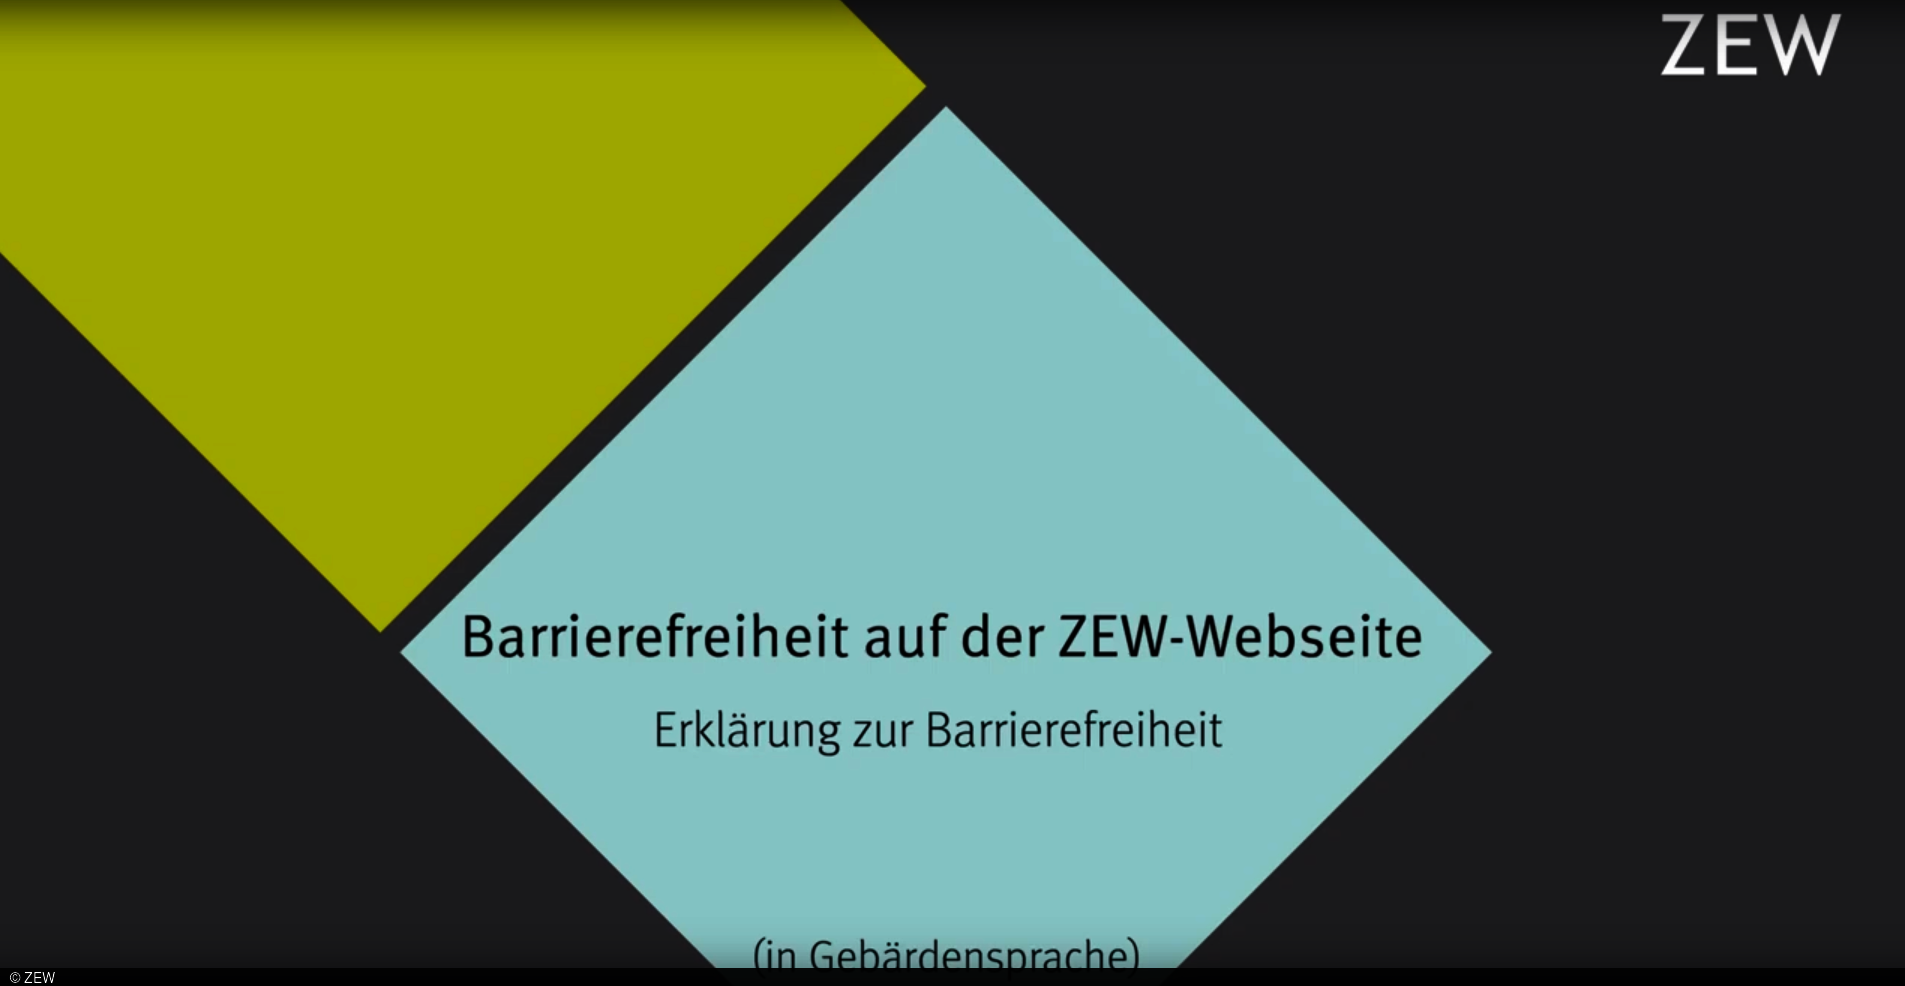 Ein Video, das in Gebärdensprache die ZEW-Erlärung zur Barrierefreiheit zeigt